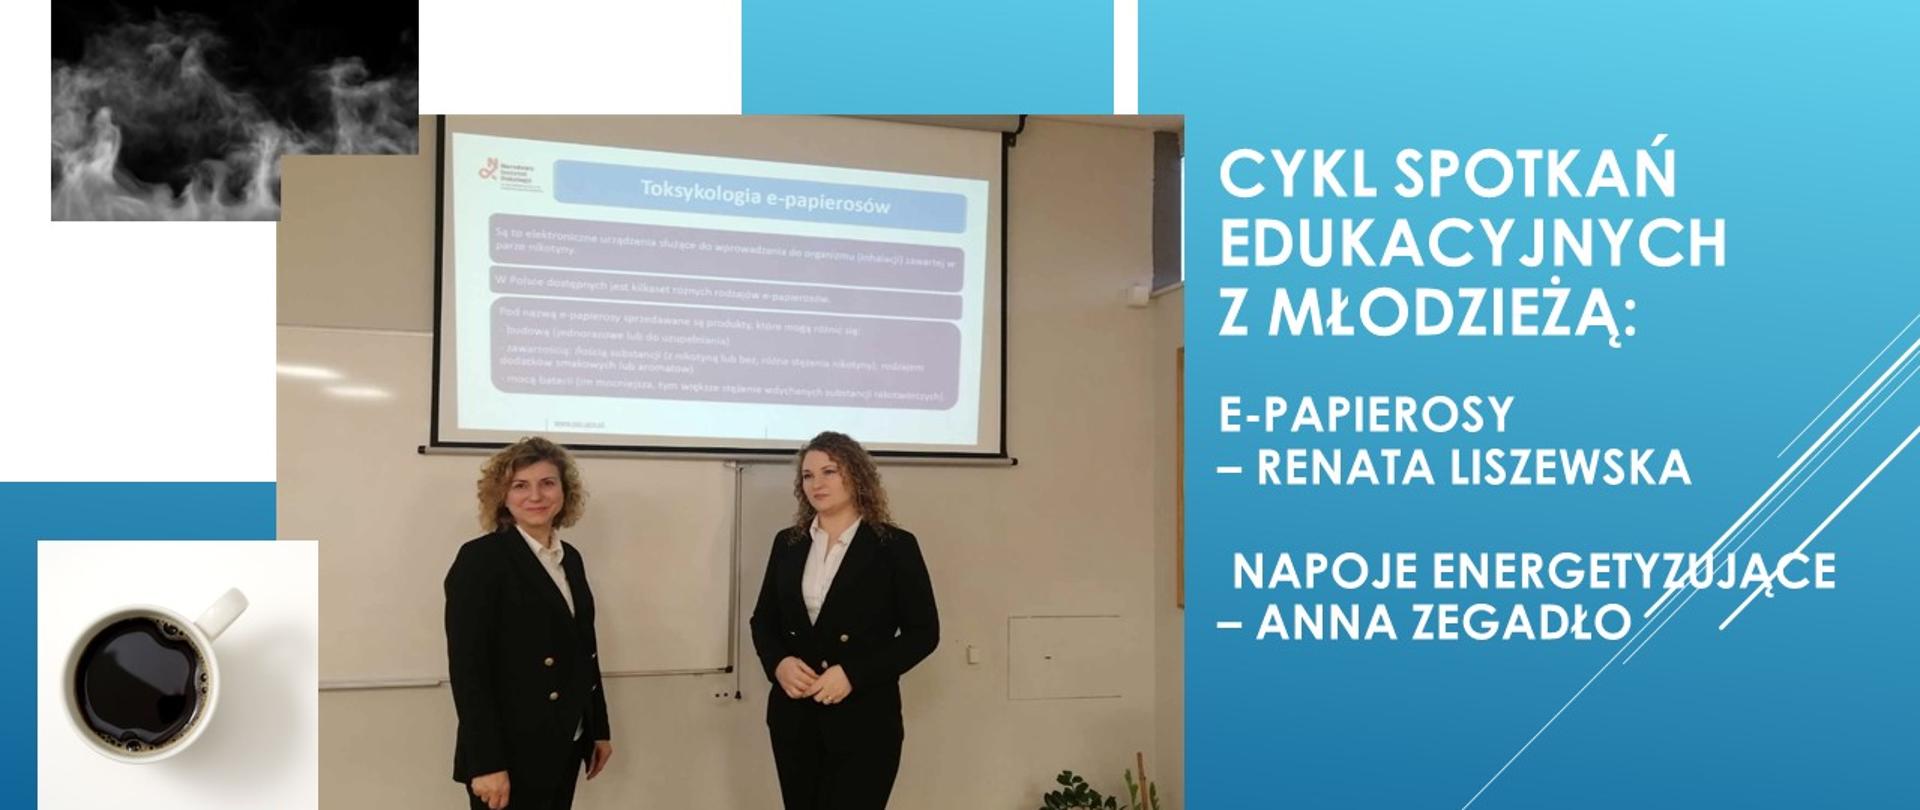 Dwie przedstawicielki Państwowego Powiatowego Inspektora Sanitarnego w Garwolinie w czasie spotkania edukacyjnego na tle slajdu Toksykologia e-papierosów.